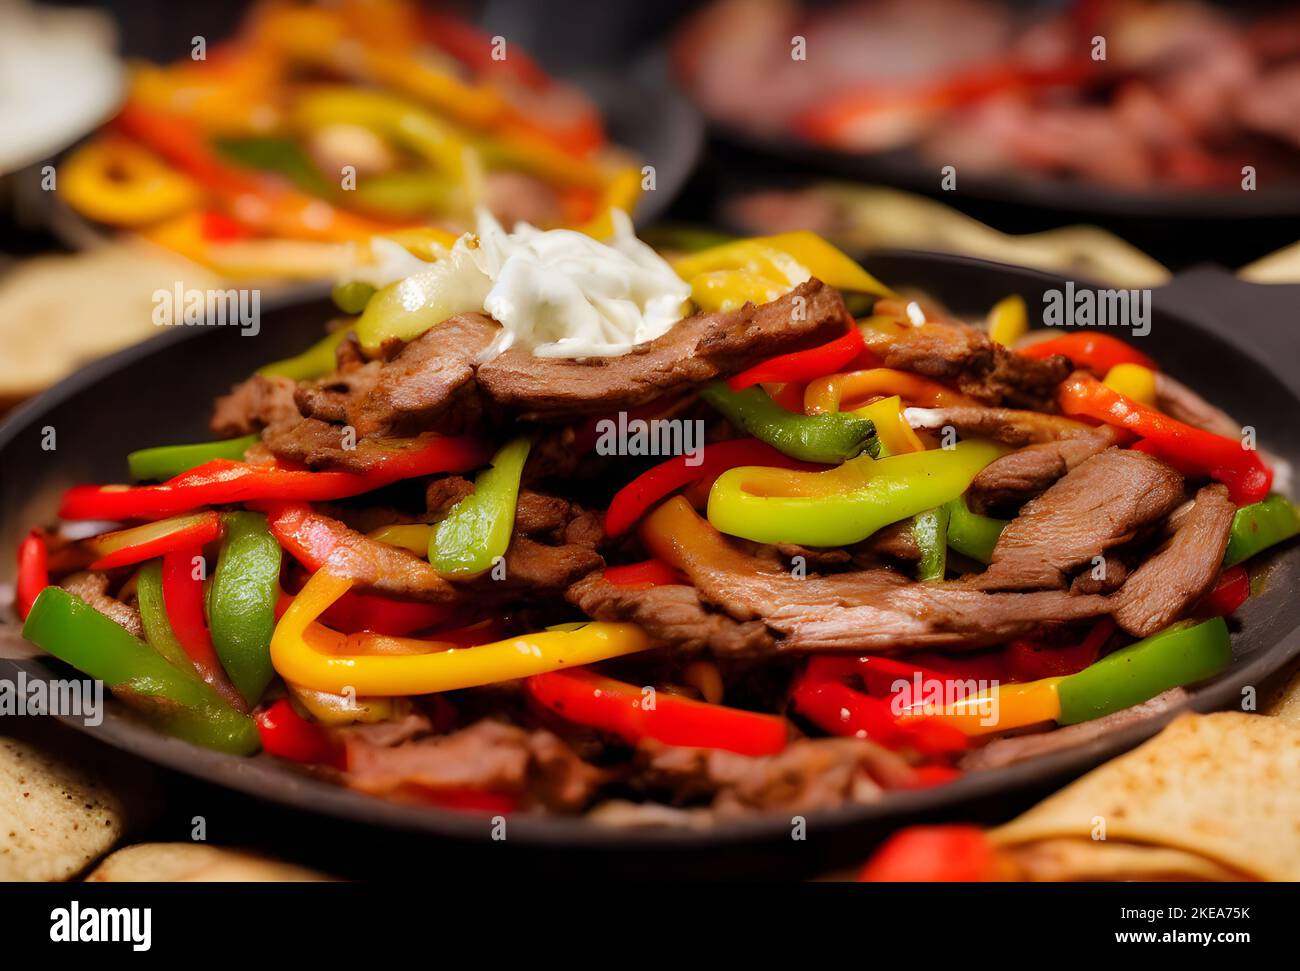 Foto von Fajitas, einem Speiseelement aus der tex-mex Cuisine Stockfoto